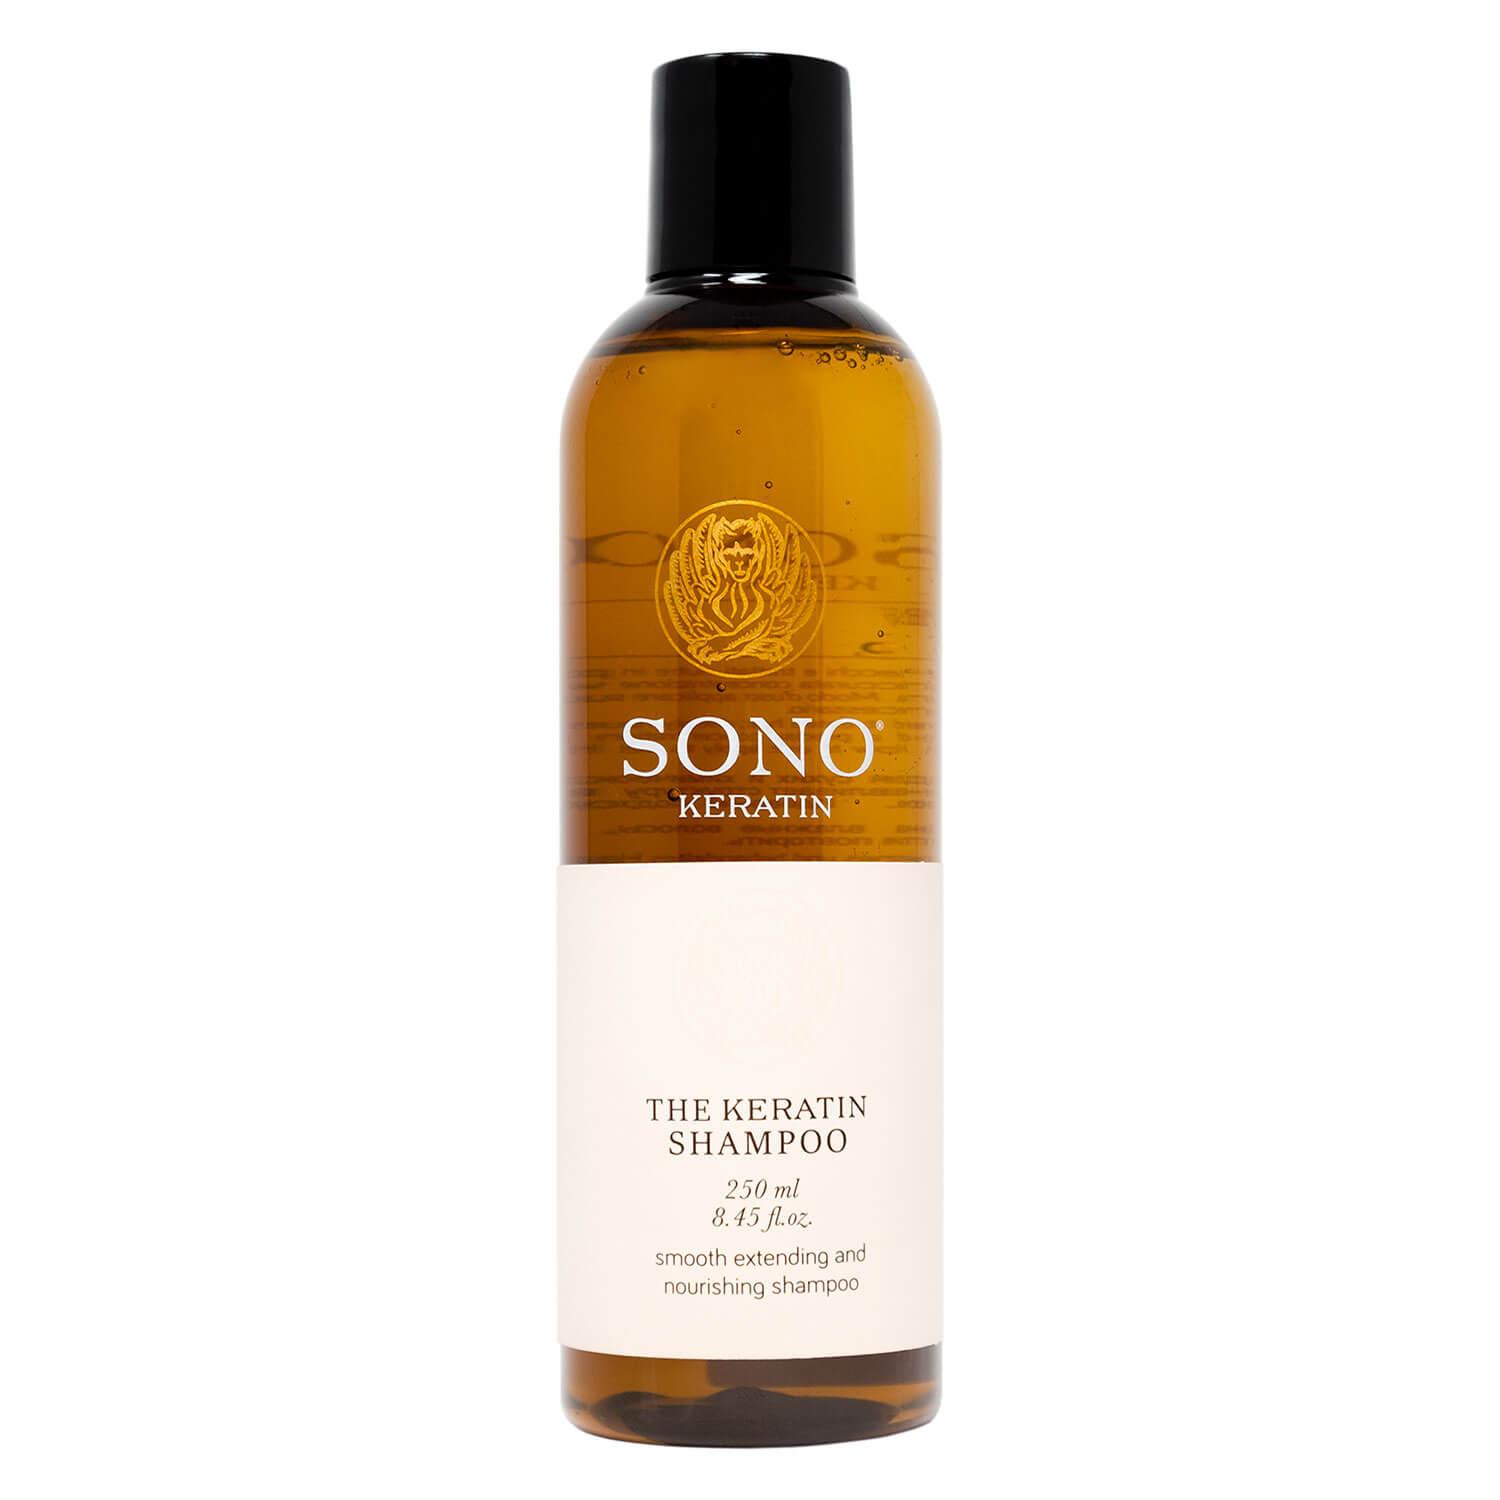 SONO Keratin - The Keratin Shampoo